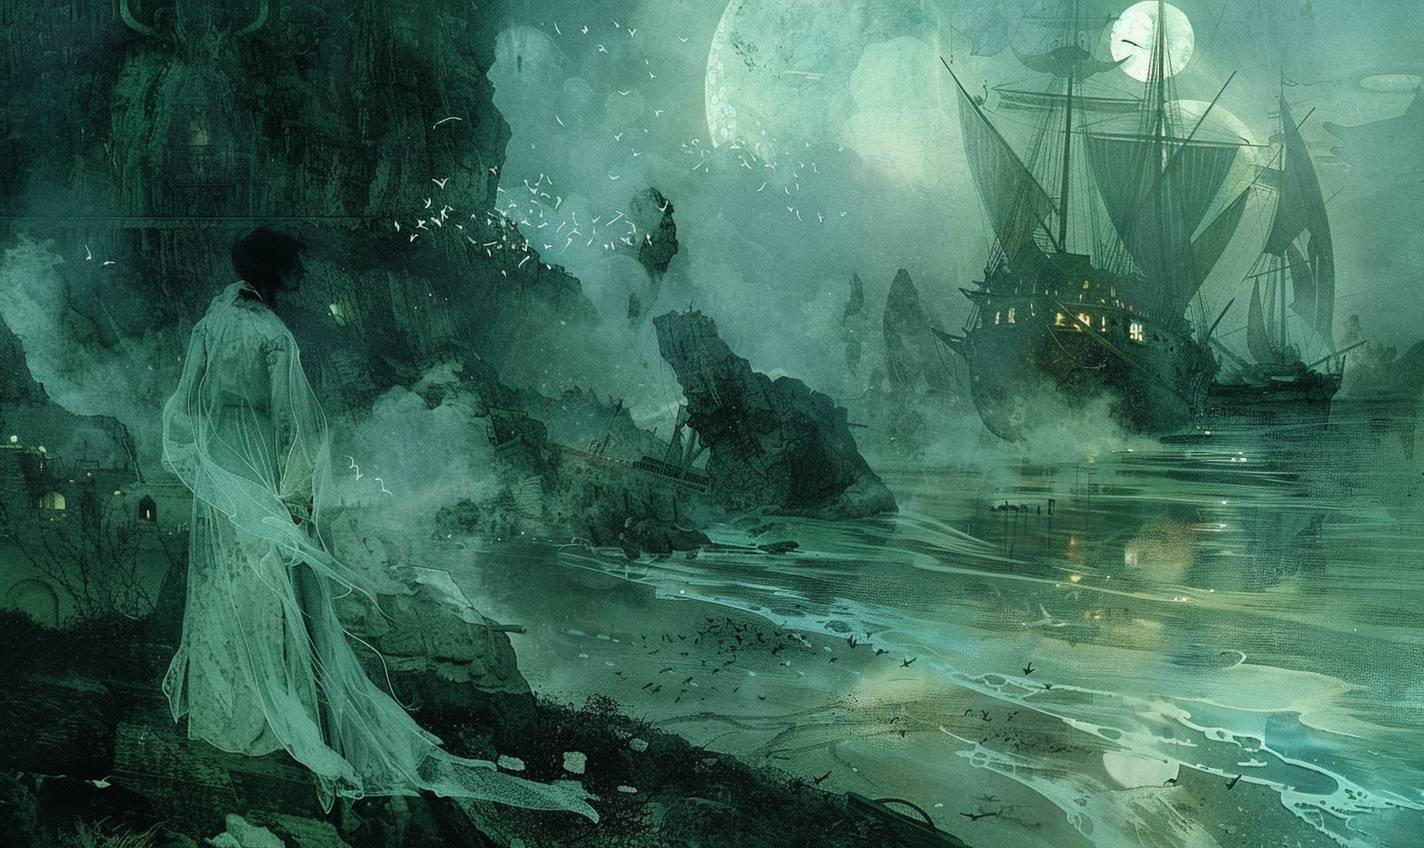 アルフォンソ・ムカのスタイルで、幽霊船が幽霊のような岸辺で難破した